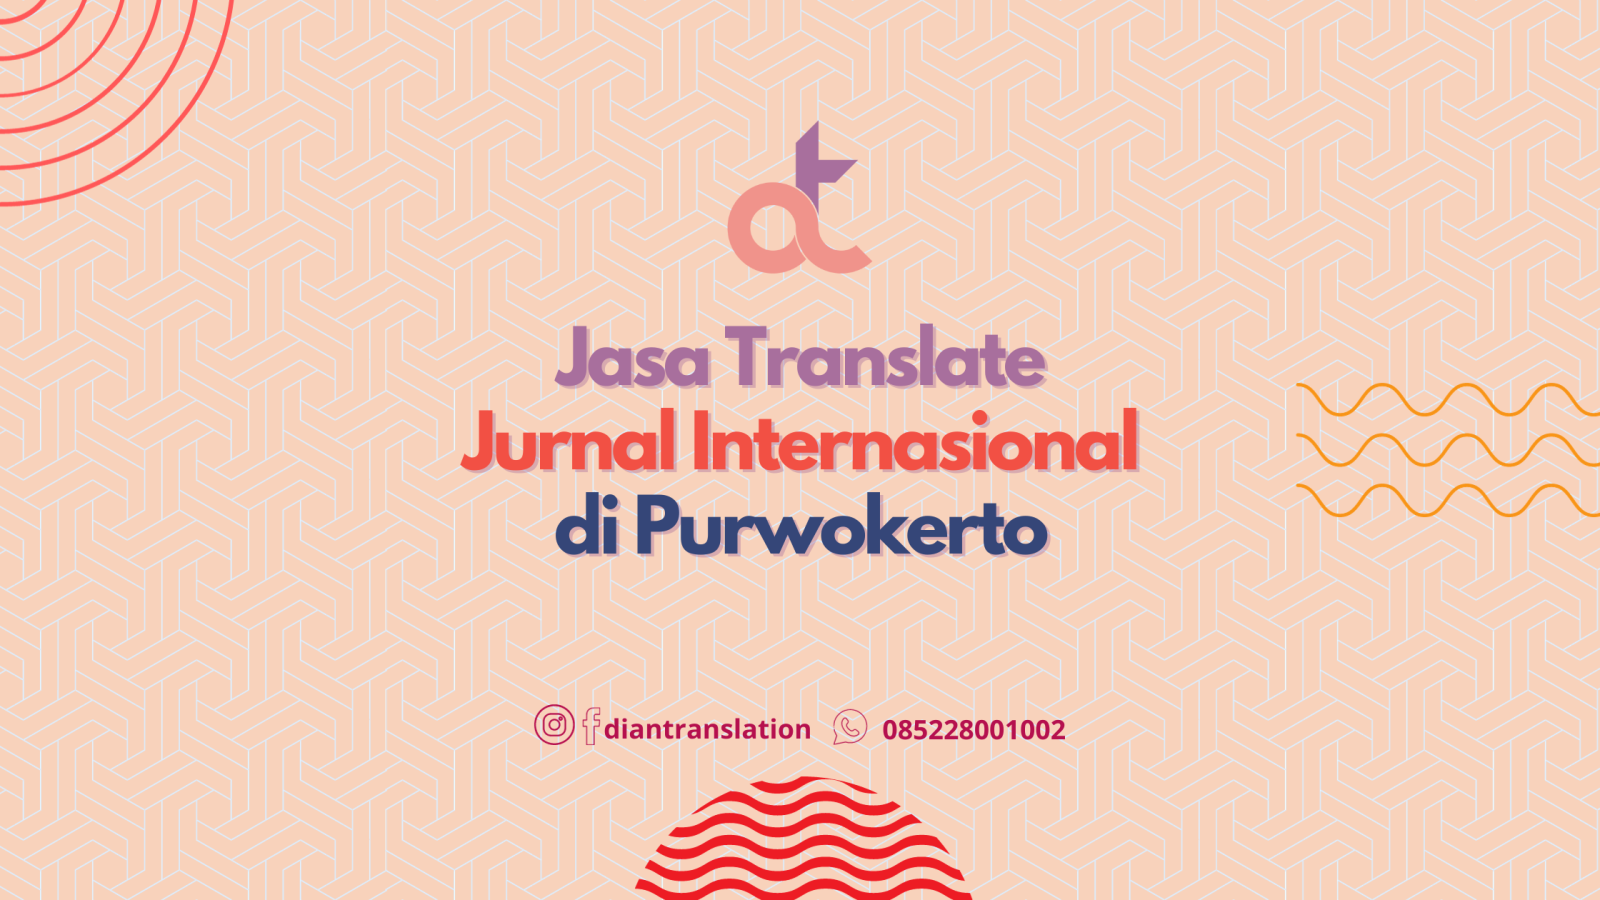 Jasa Translate di Purwokerto Bersertifikat